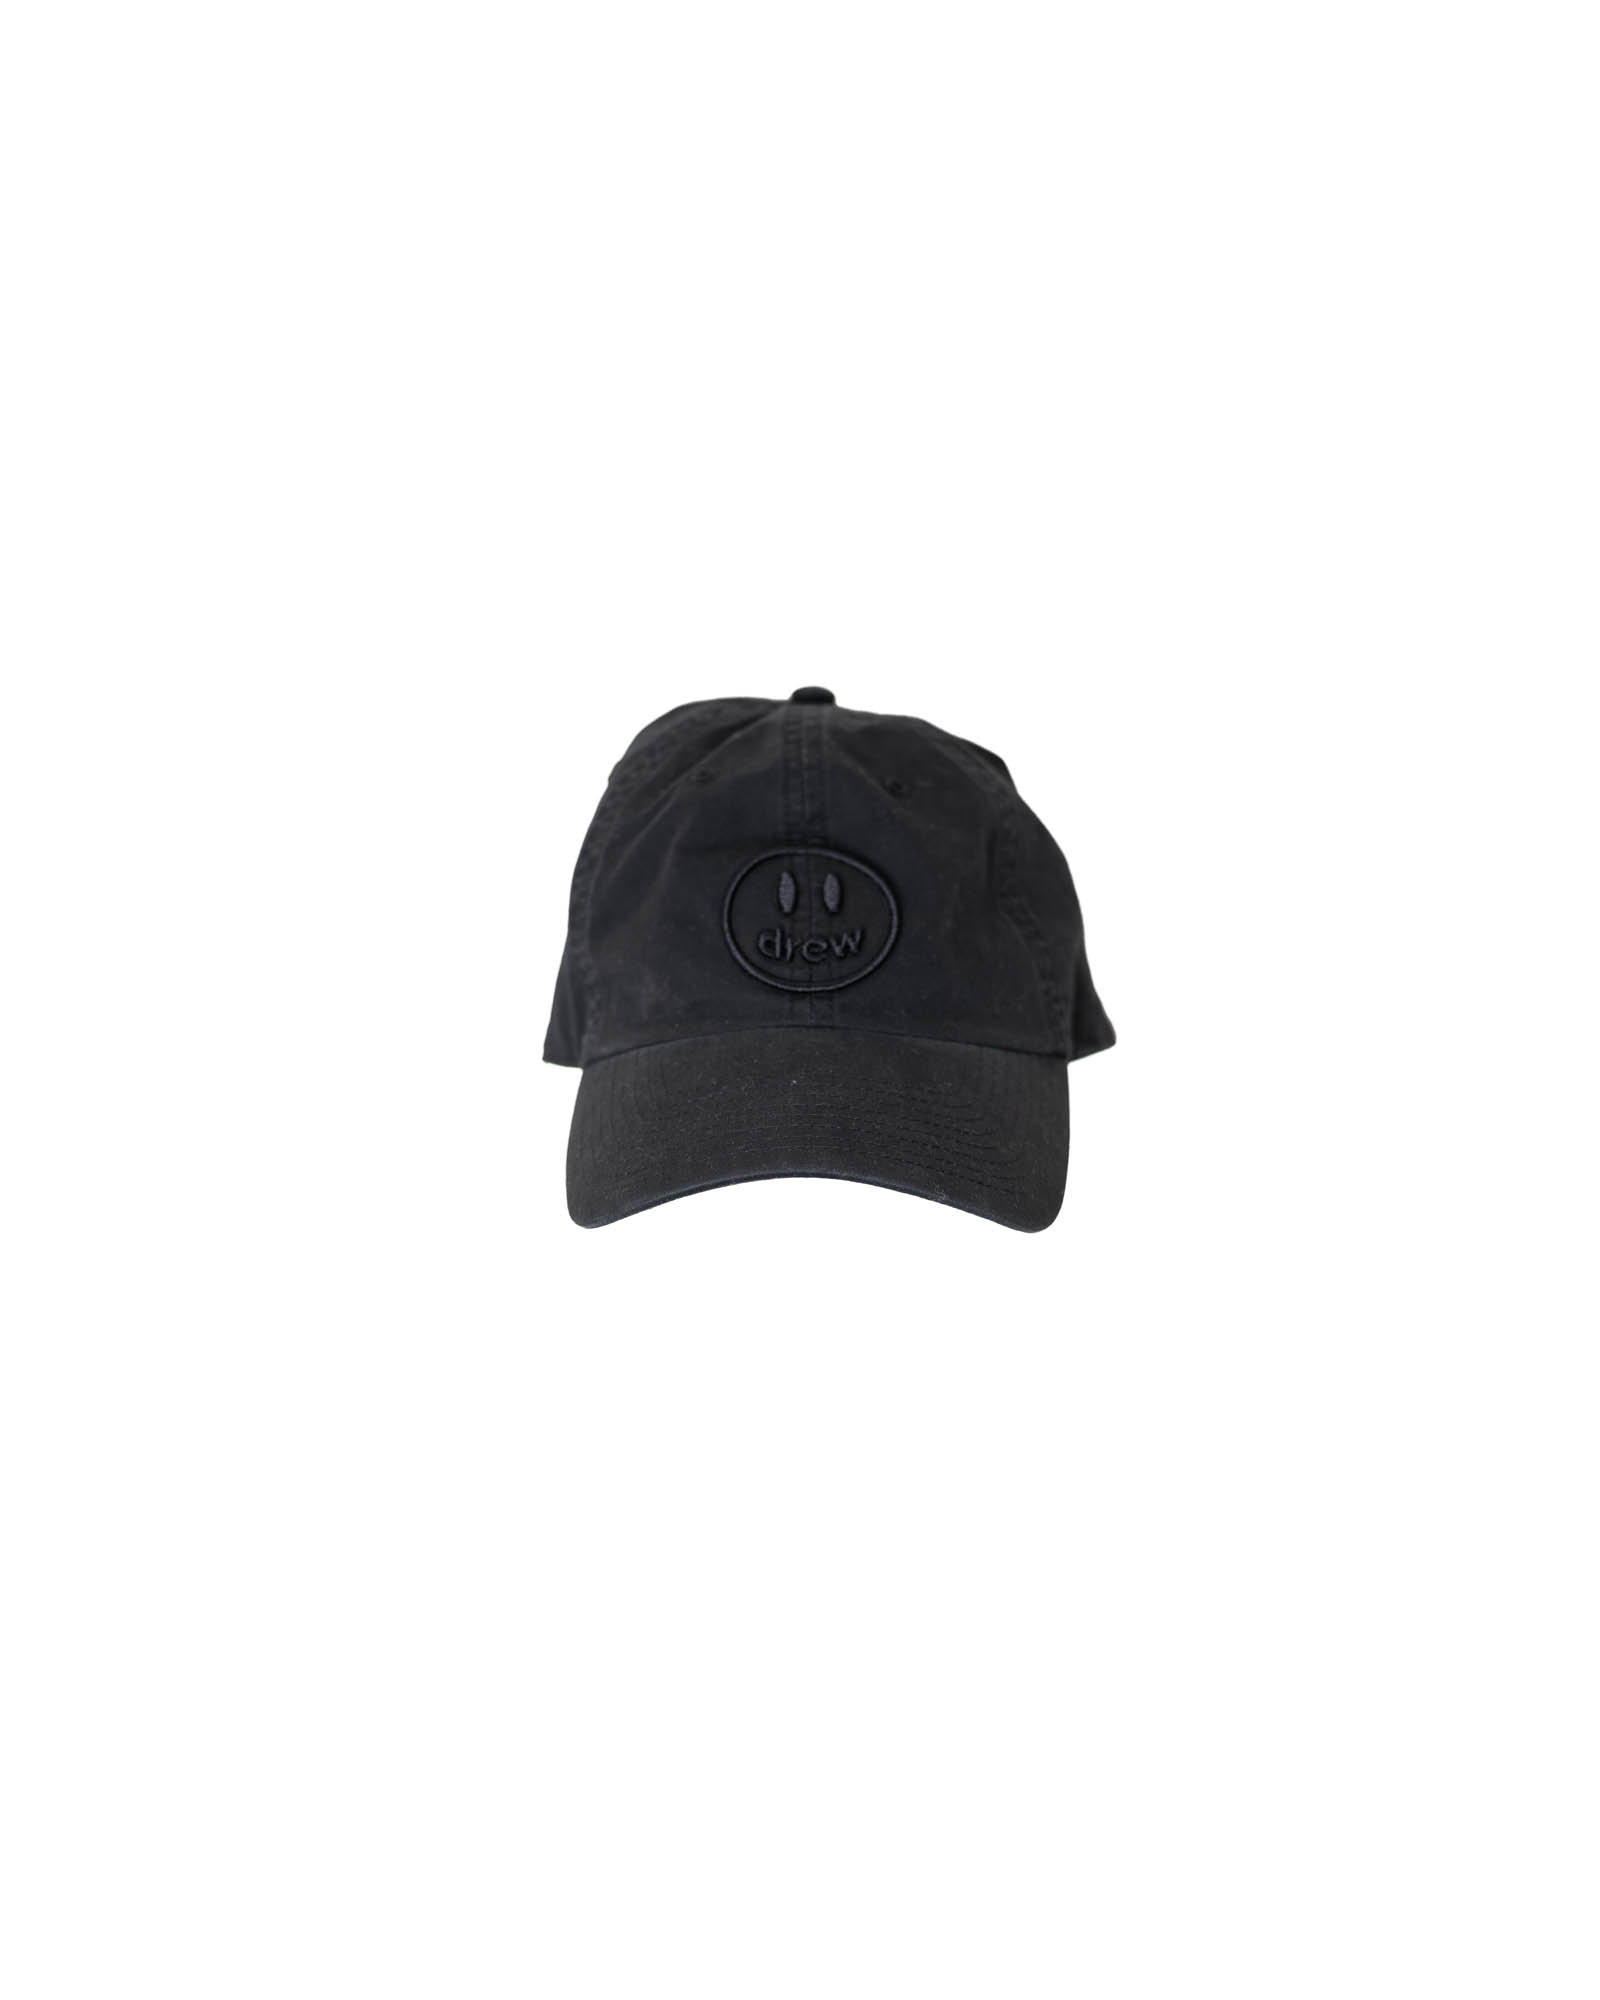 drew house black cap